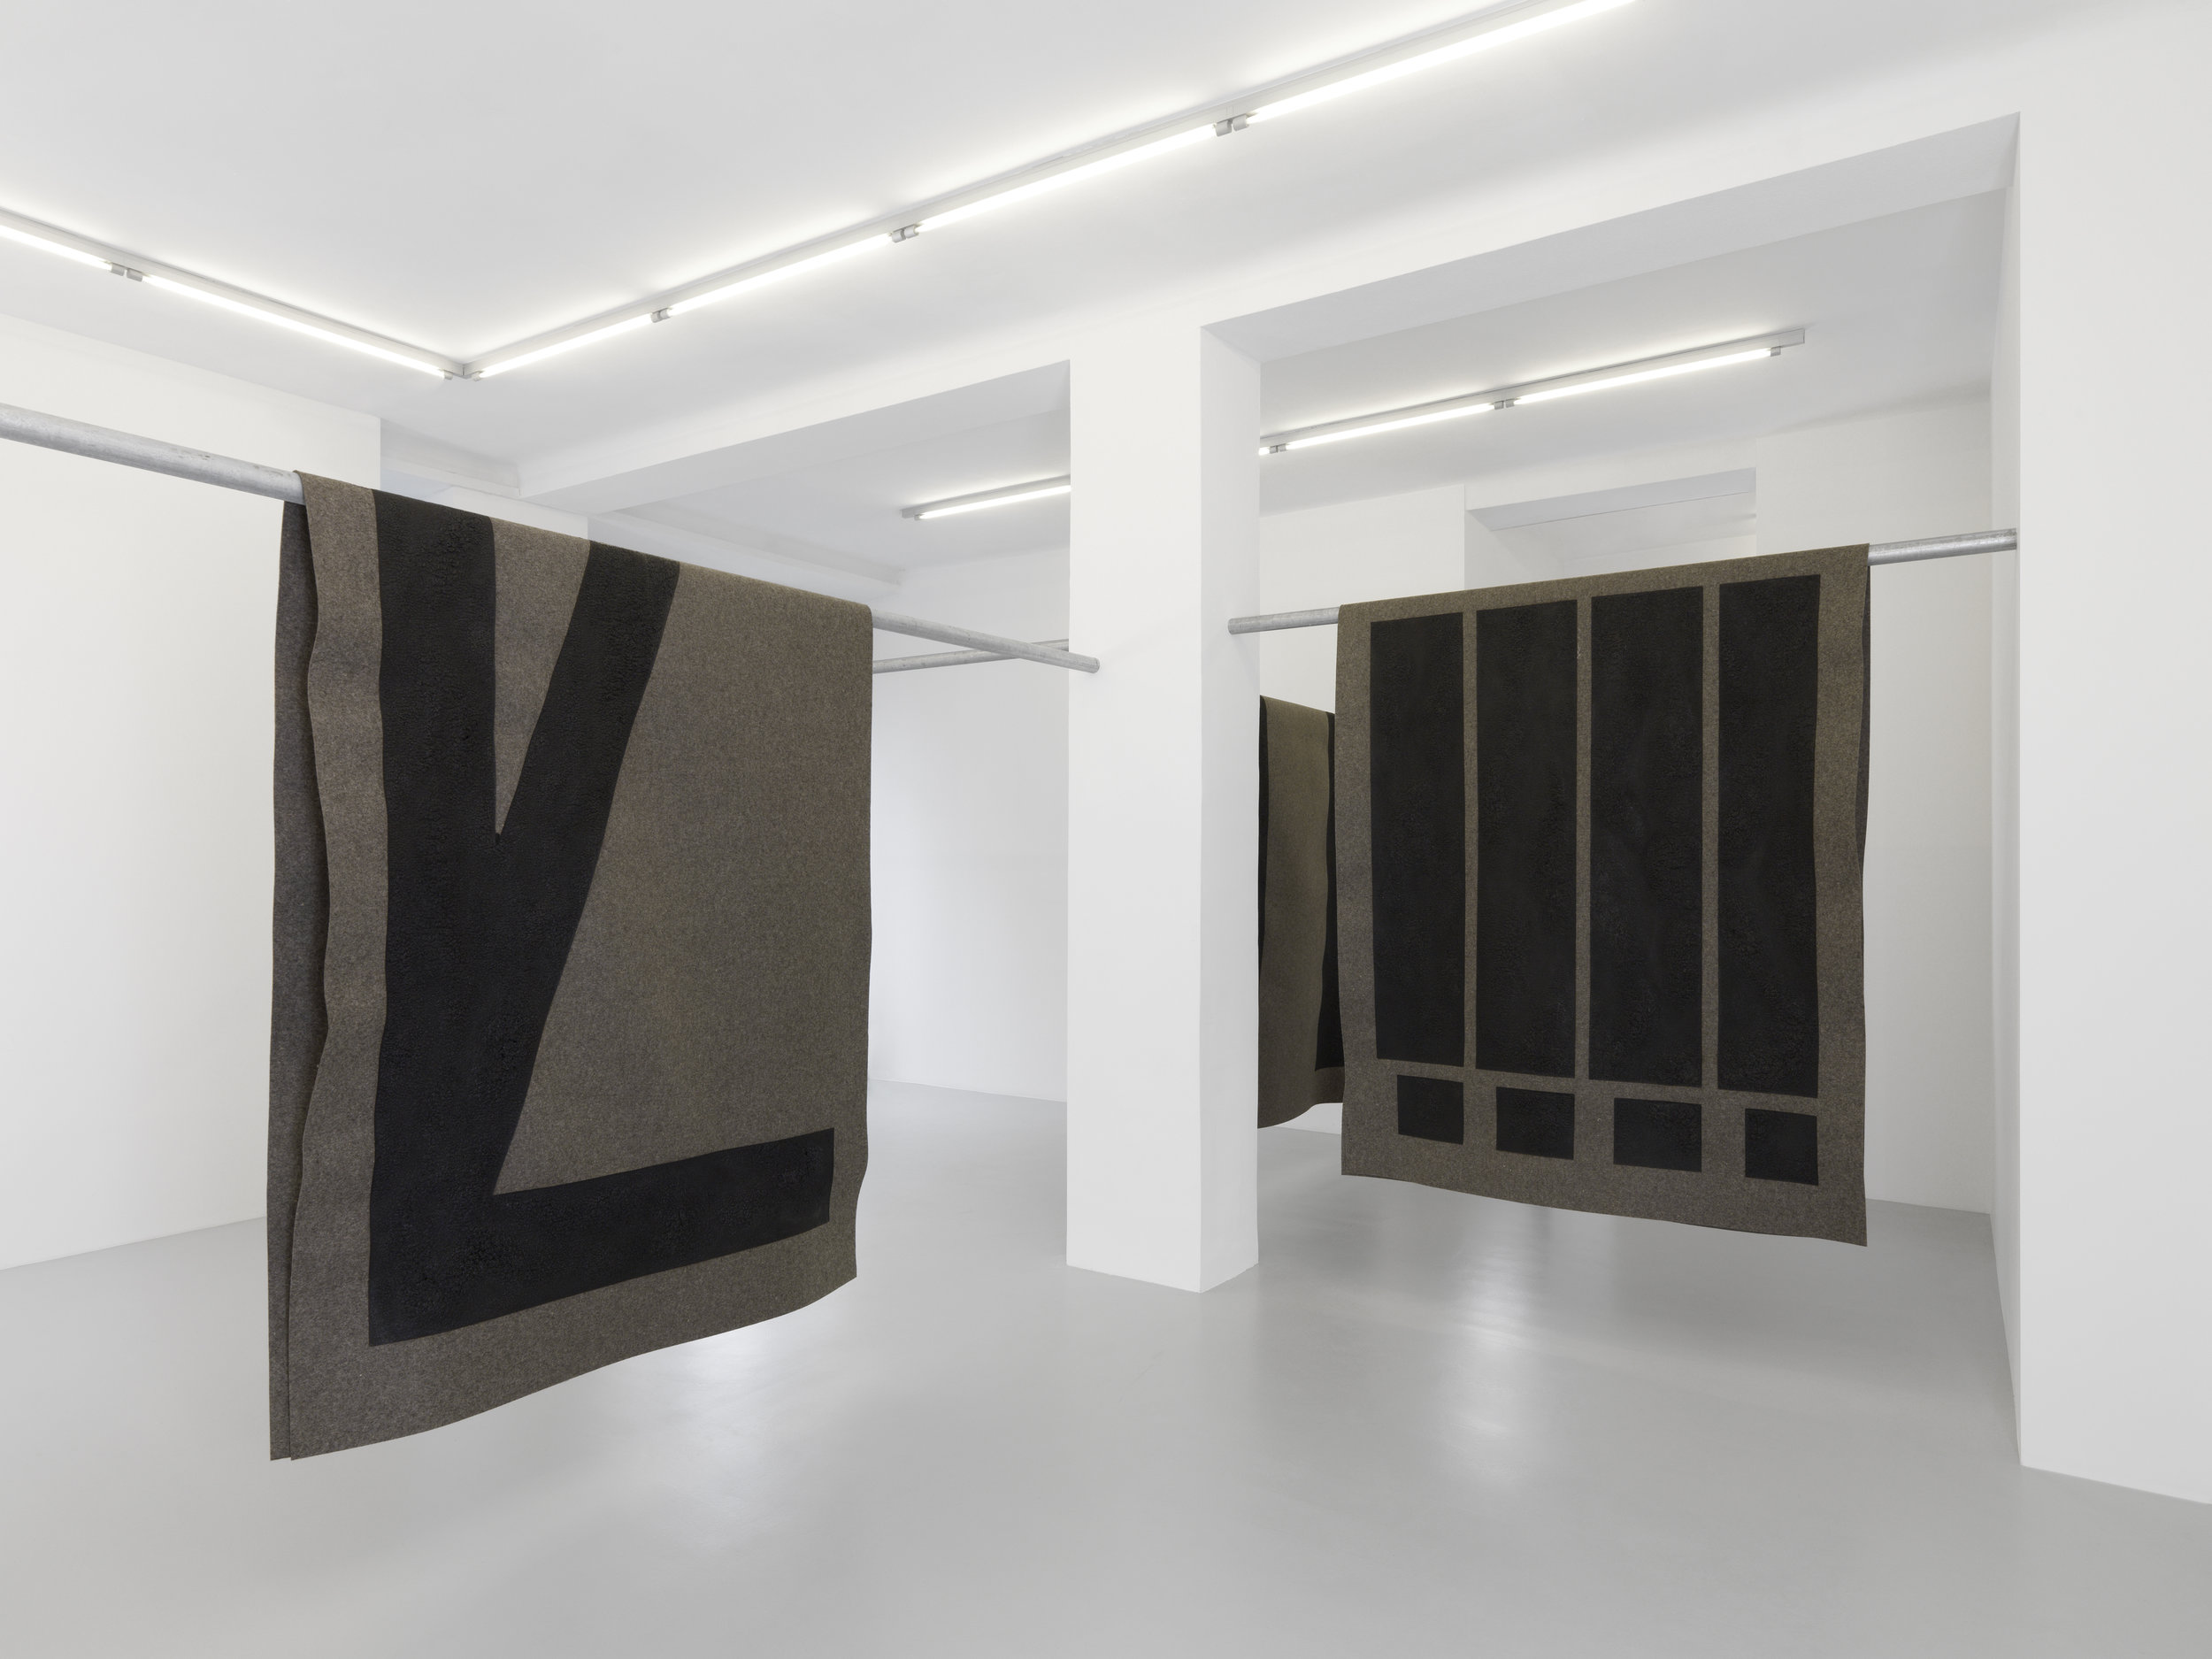 Galerie Xippas | Emilie Ding | 2016